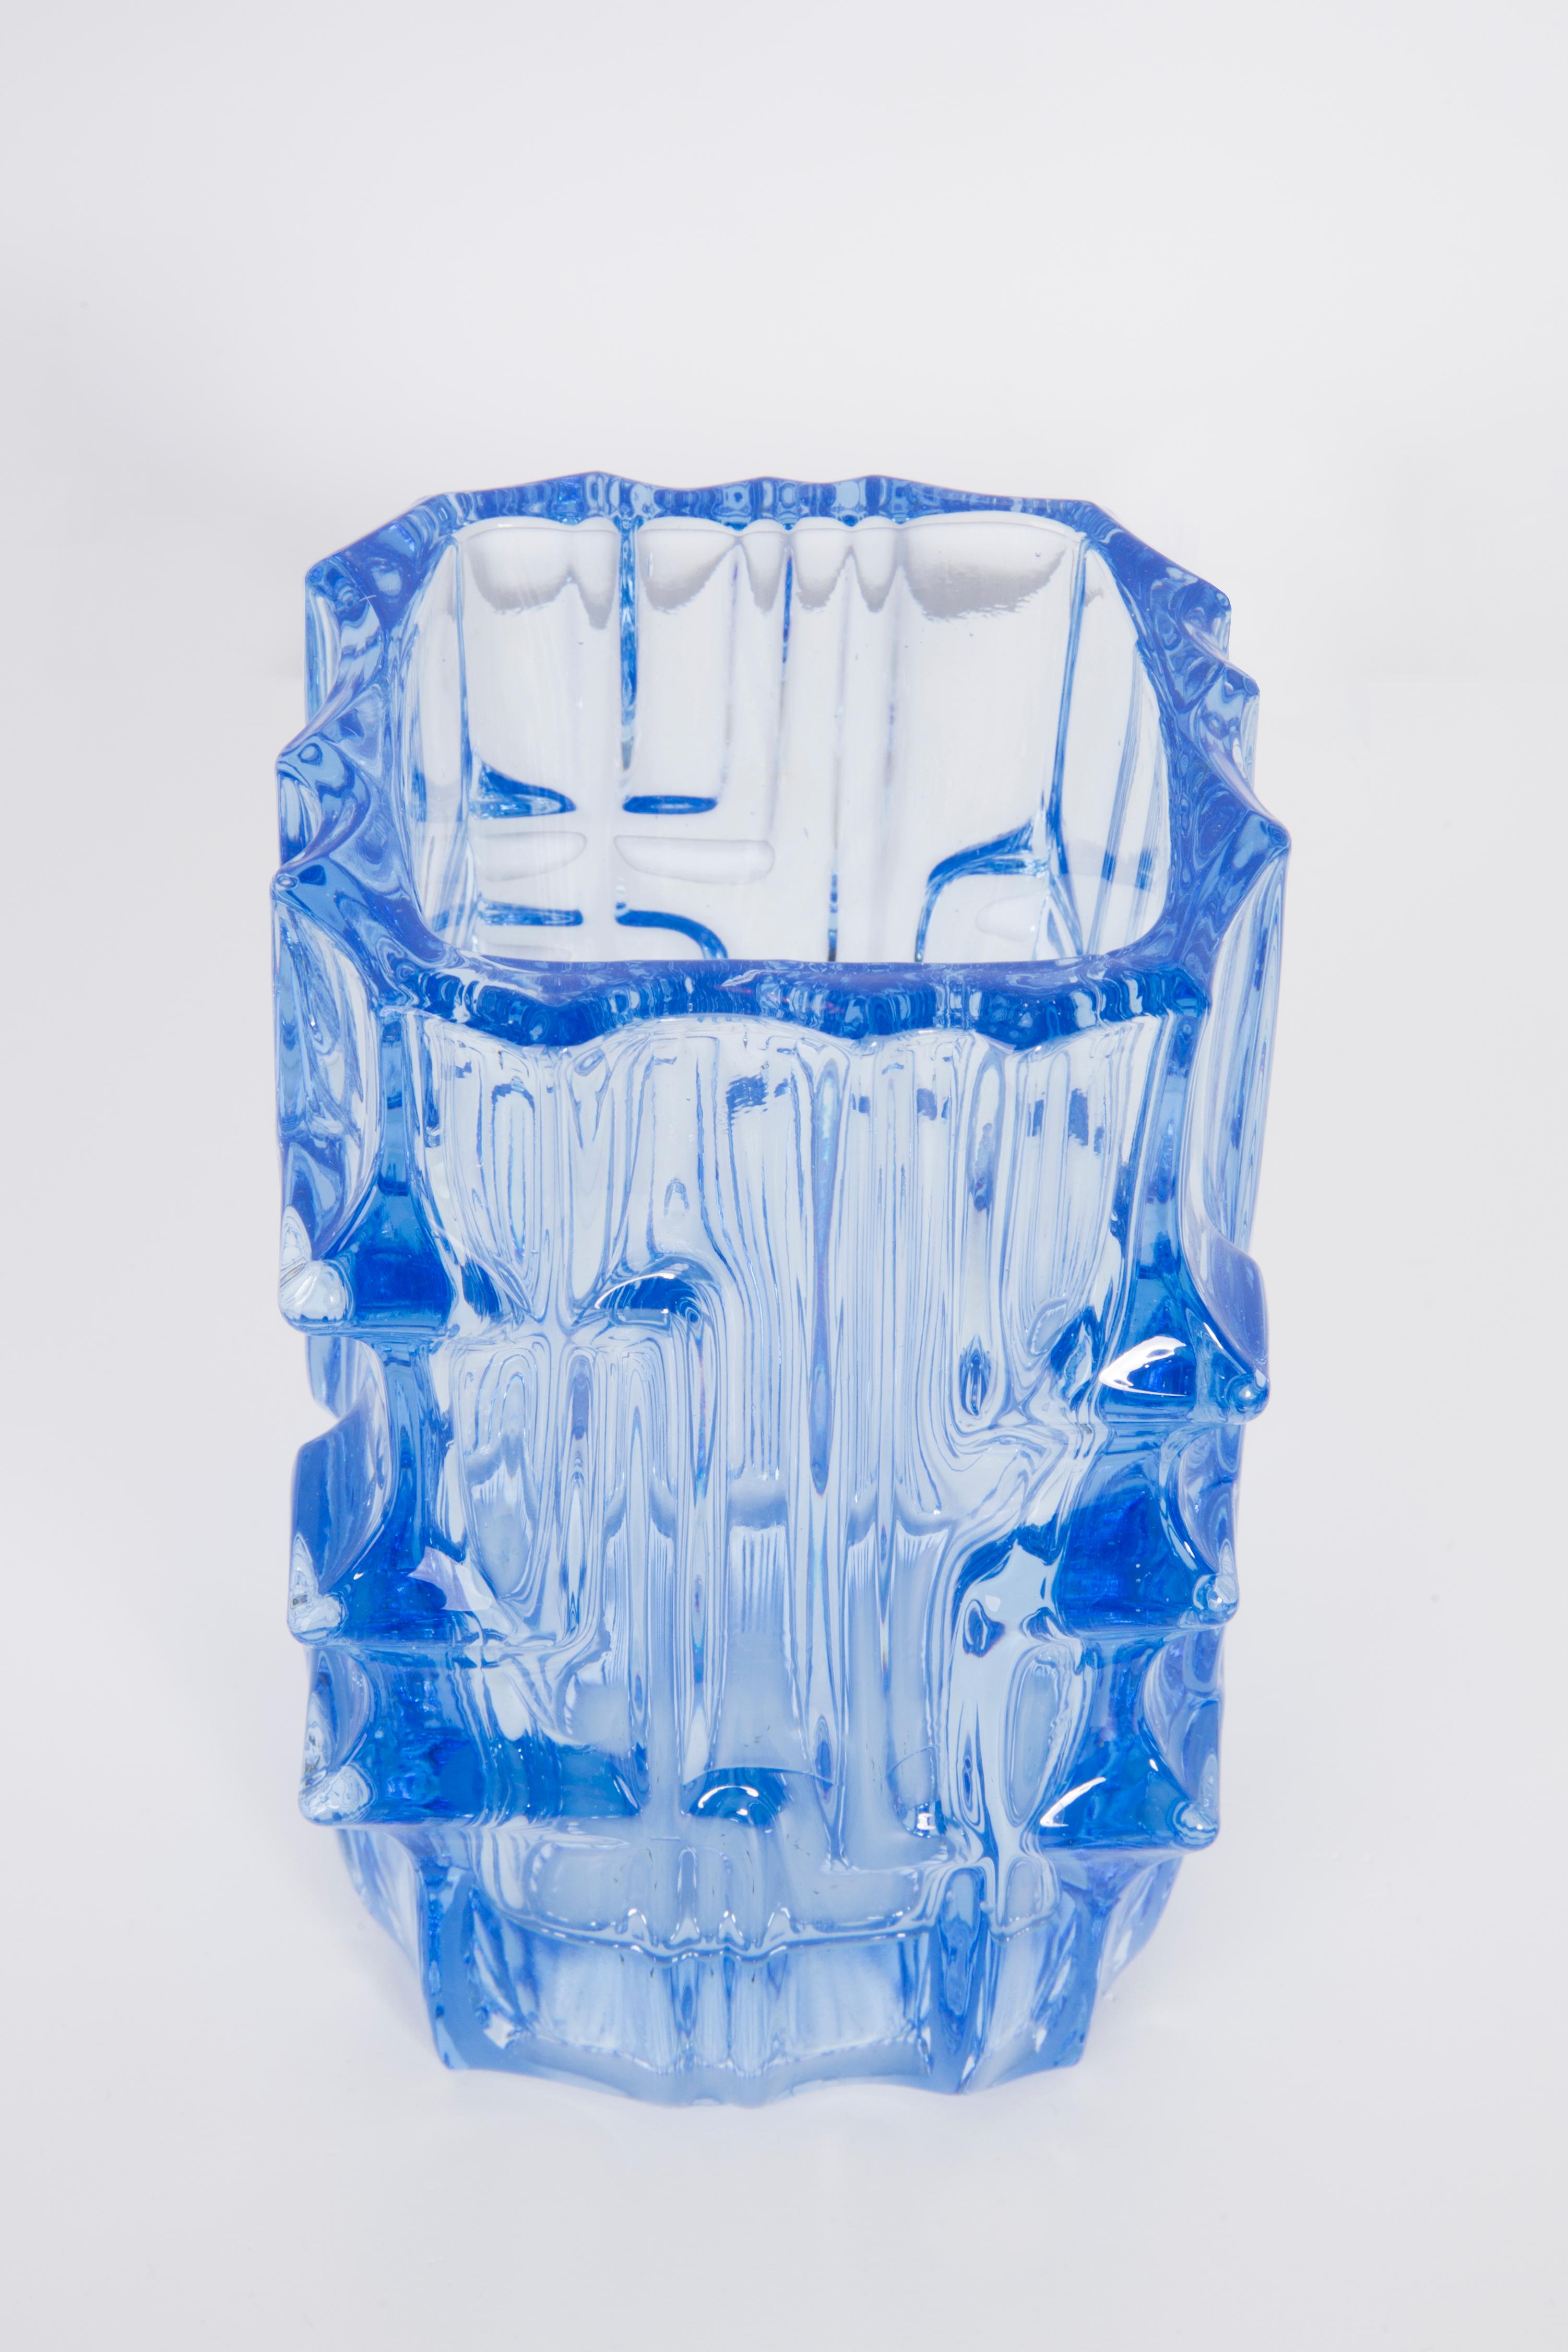 Glass Light Blue Vase by Vladislav Urban for Sklo Union, 20th Century, Europe, 1960s For Sale